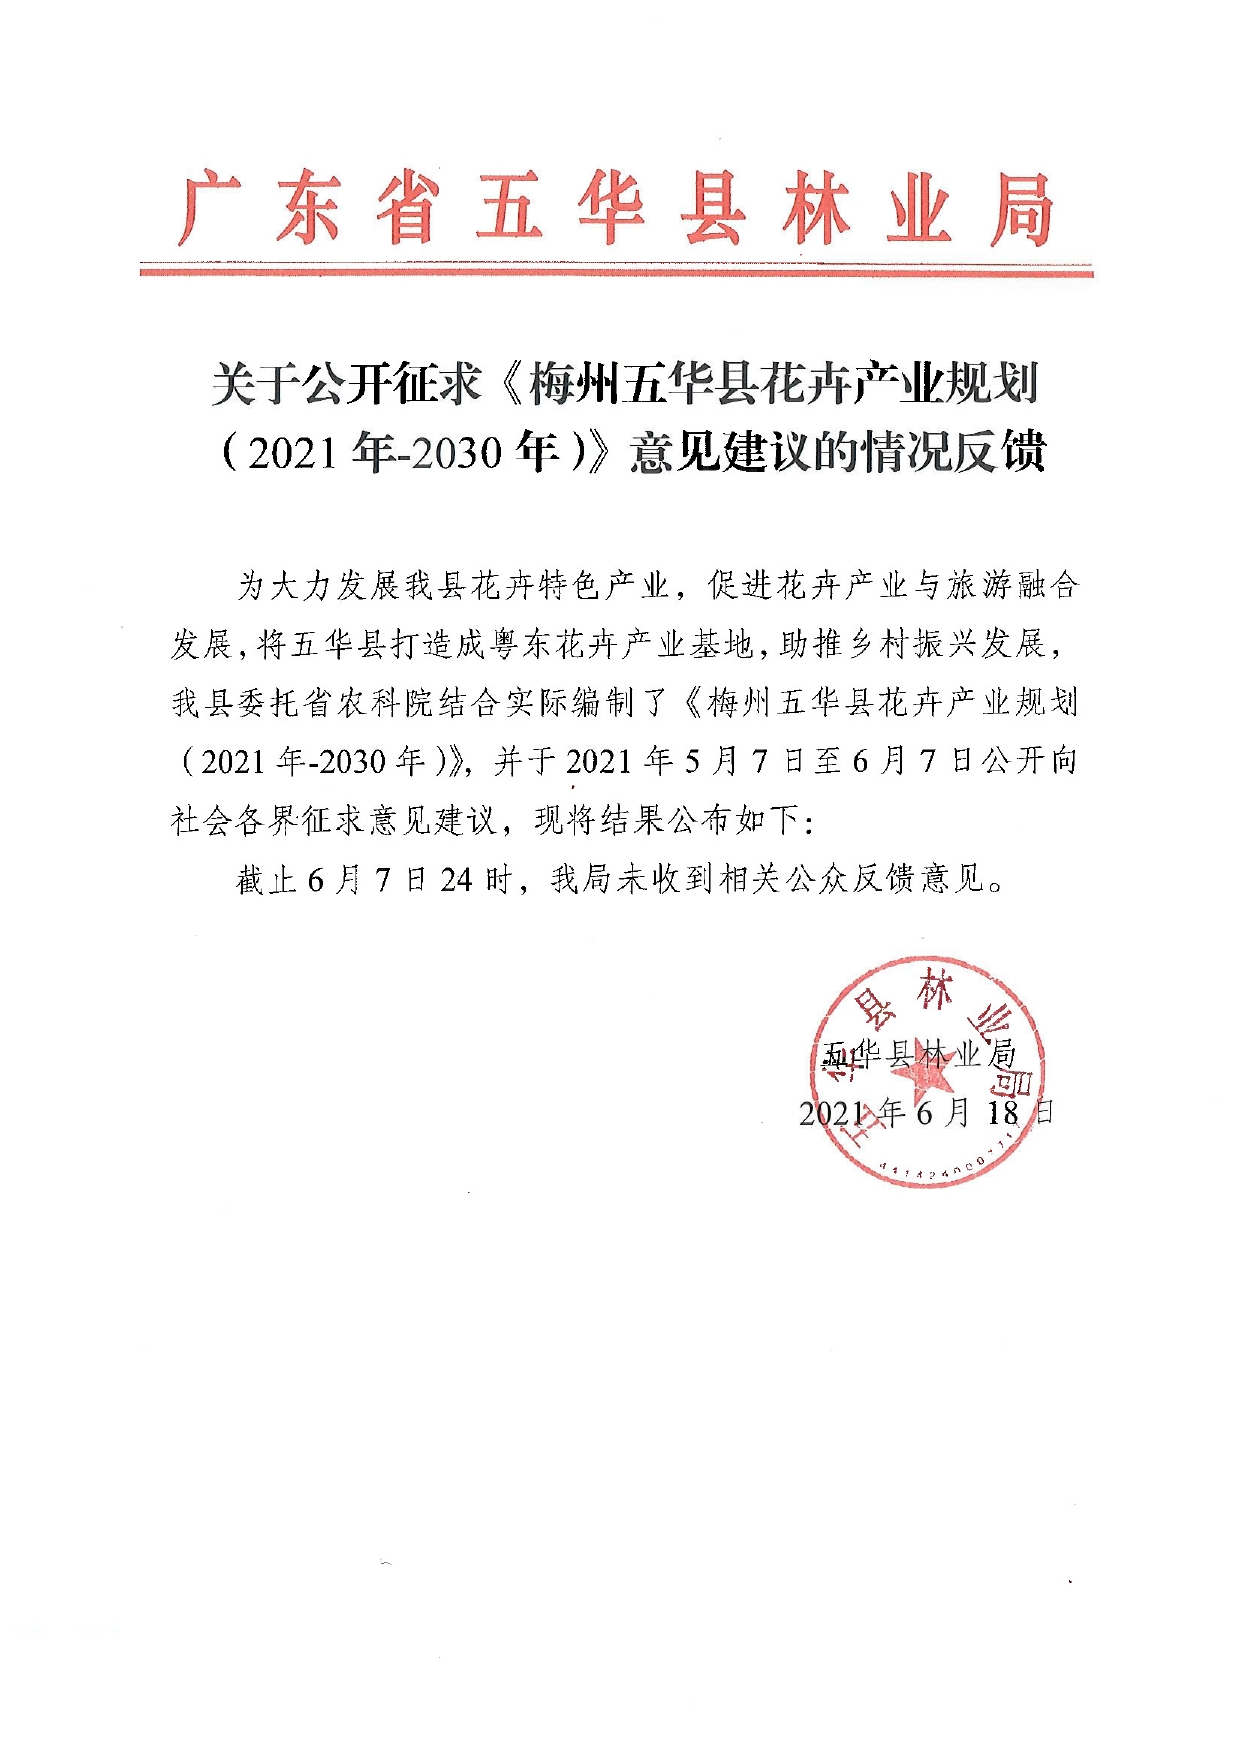 关于公开征求《梅州五华县花卉产业规划（2021年-2030年）》意见建议的情况反馈0000.jpg